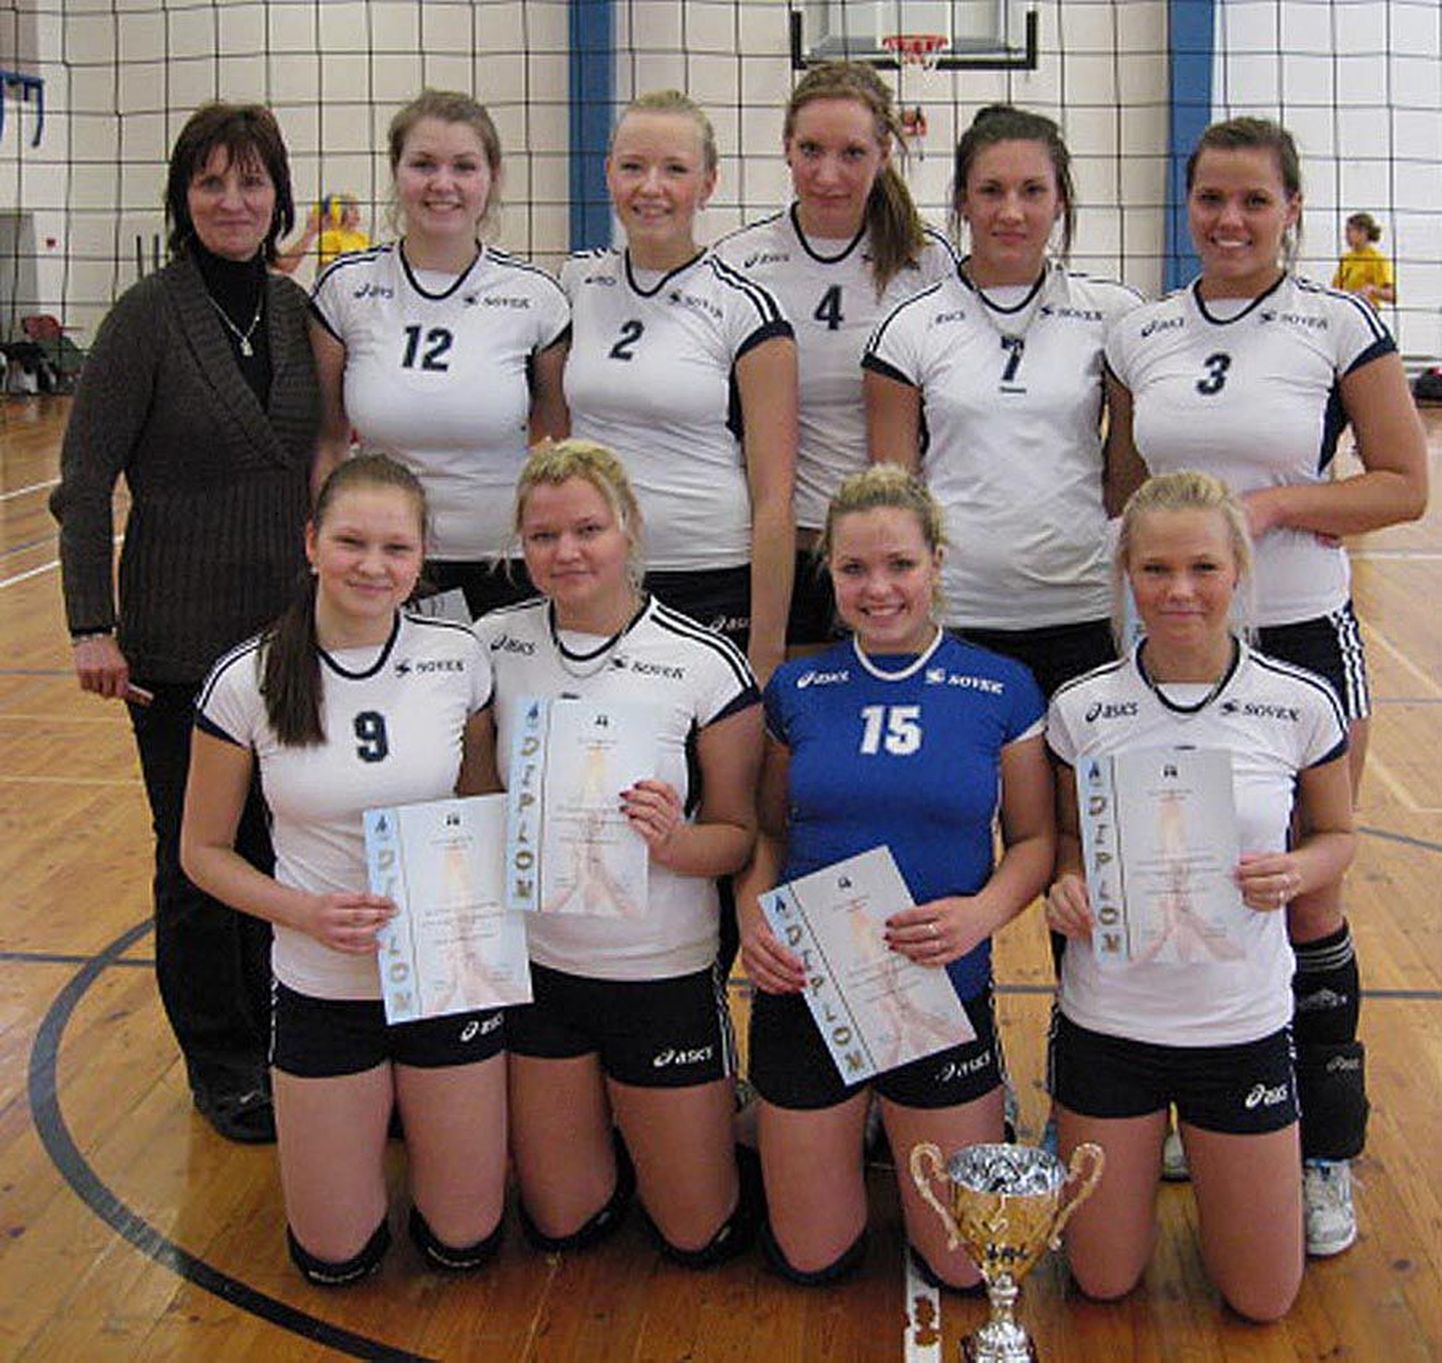 Viljandi spordikooli naiskond saavutas Eesti võrkpalli liidu alla 20-aastaste karikavõistluste finaalturniiril
täisedu, viie võiduga esikoha.